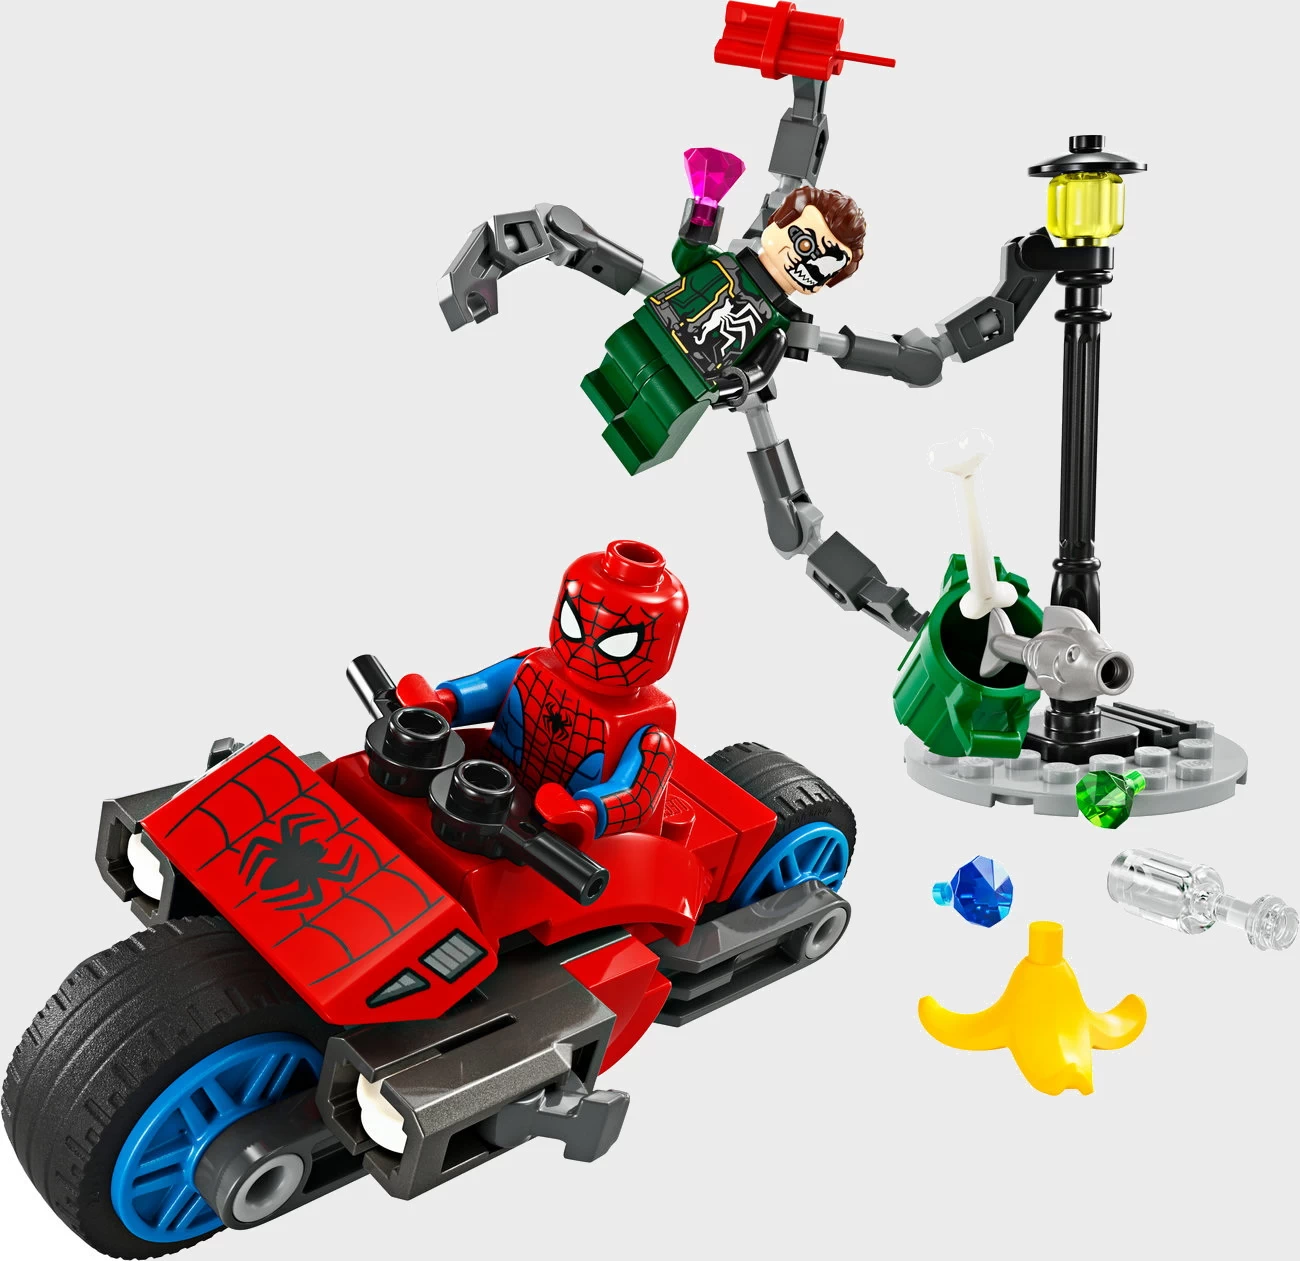 LEGO Marvel 76275 - Motorrad-Verfolgungsjagd: Spider-Man vs. Doc Ock